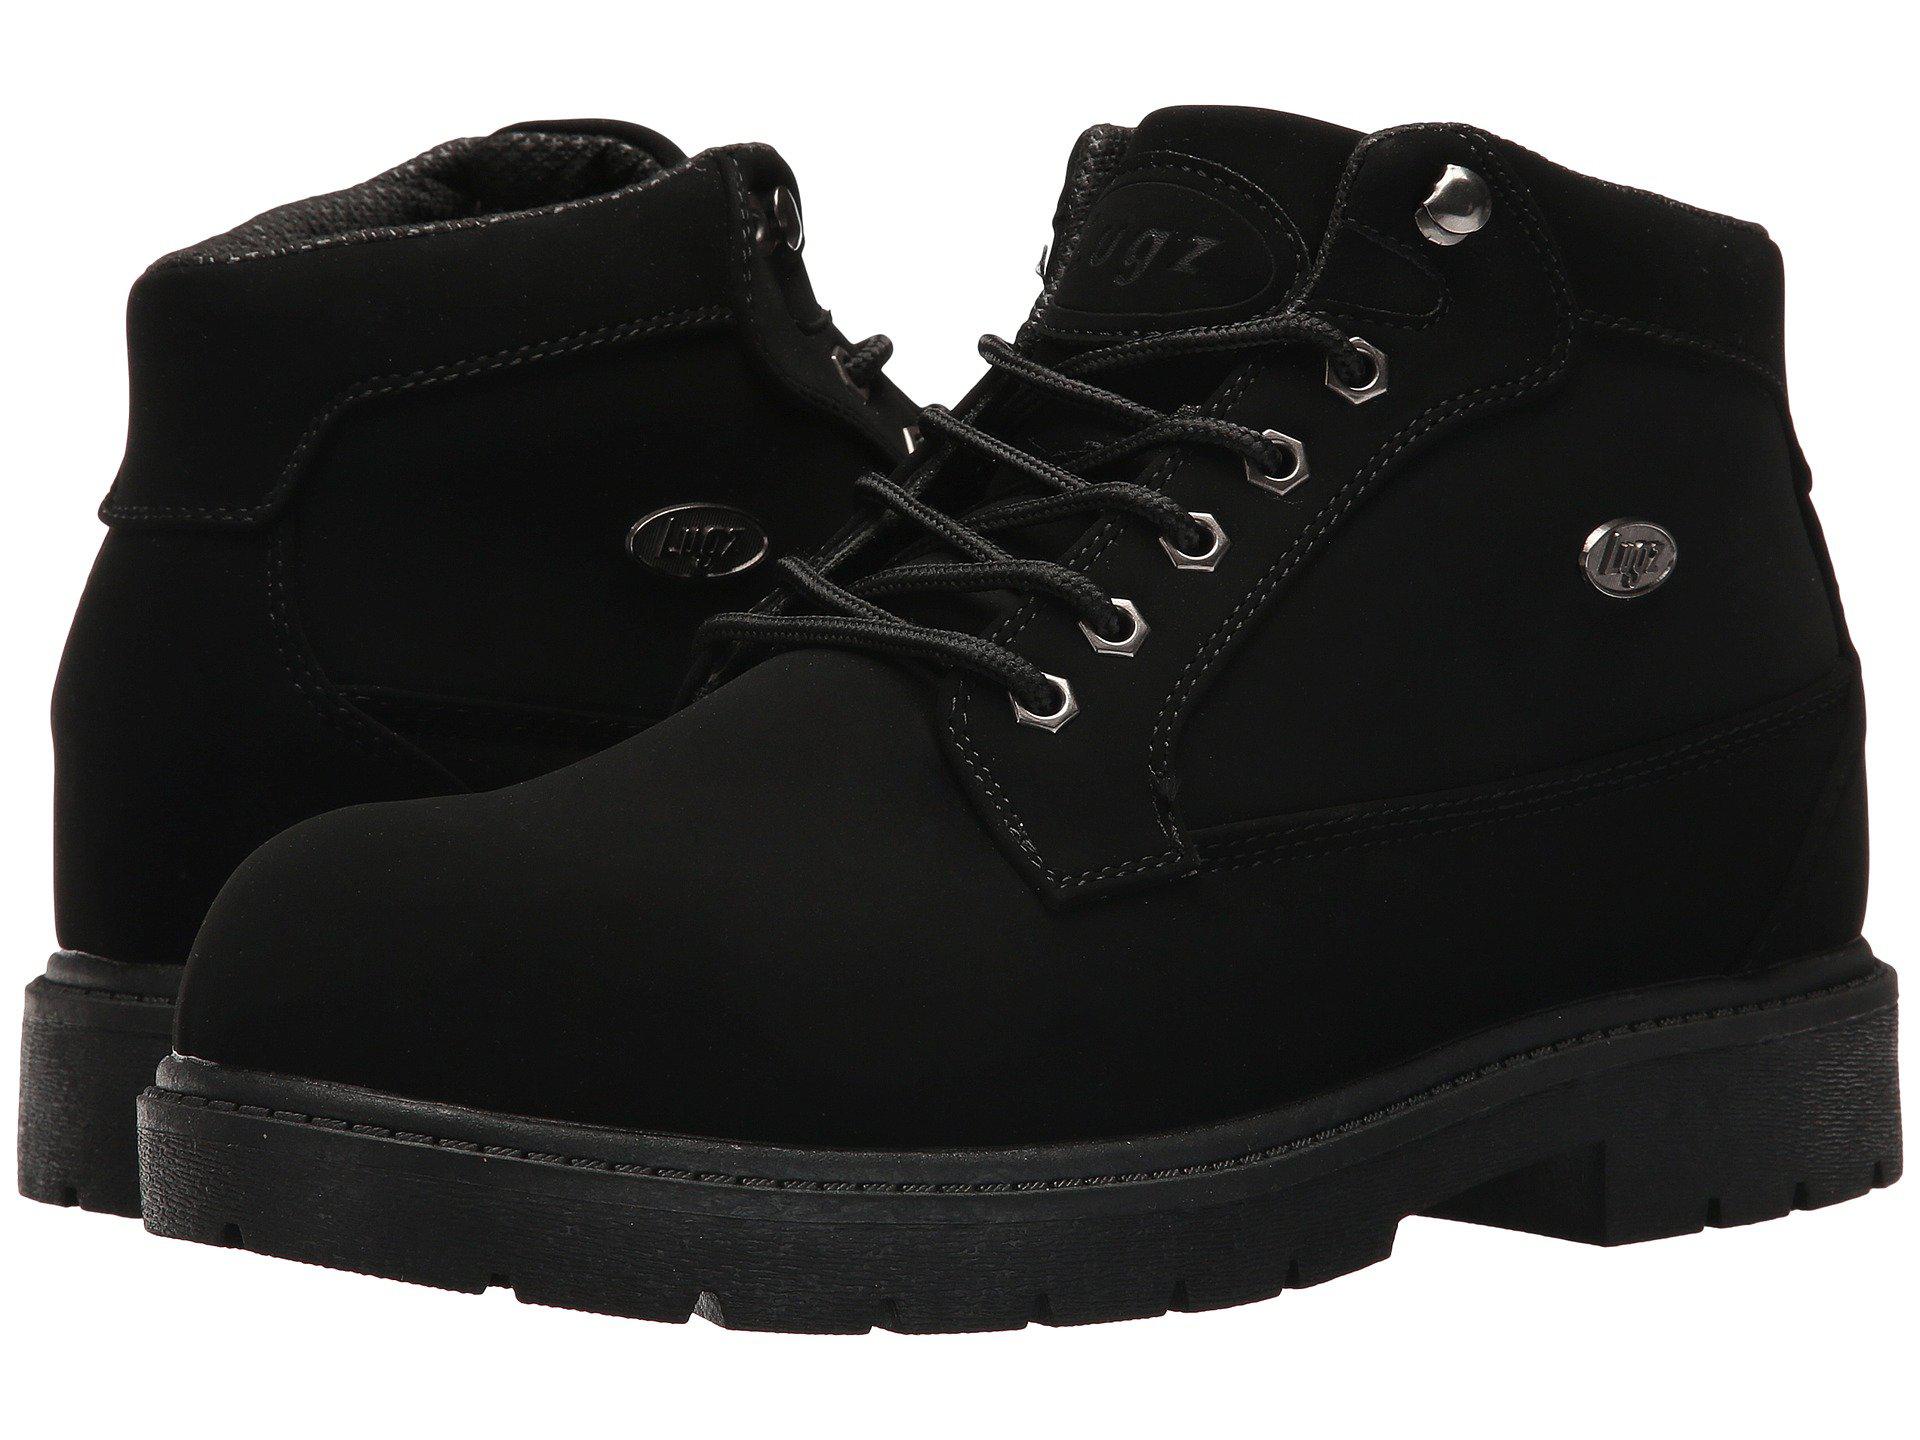 Lyst - Lugz Mantle Mid (asphalt/dark Asphalt/black) Men's Shoes in ...